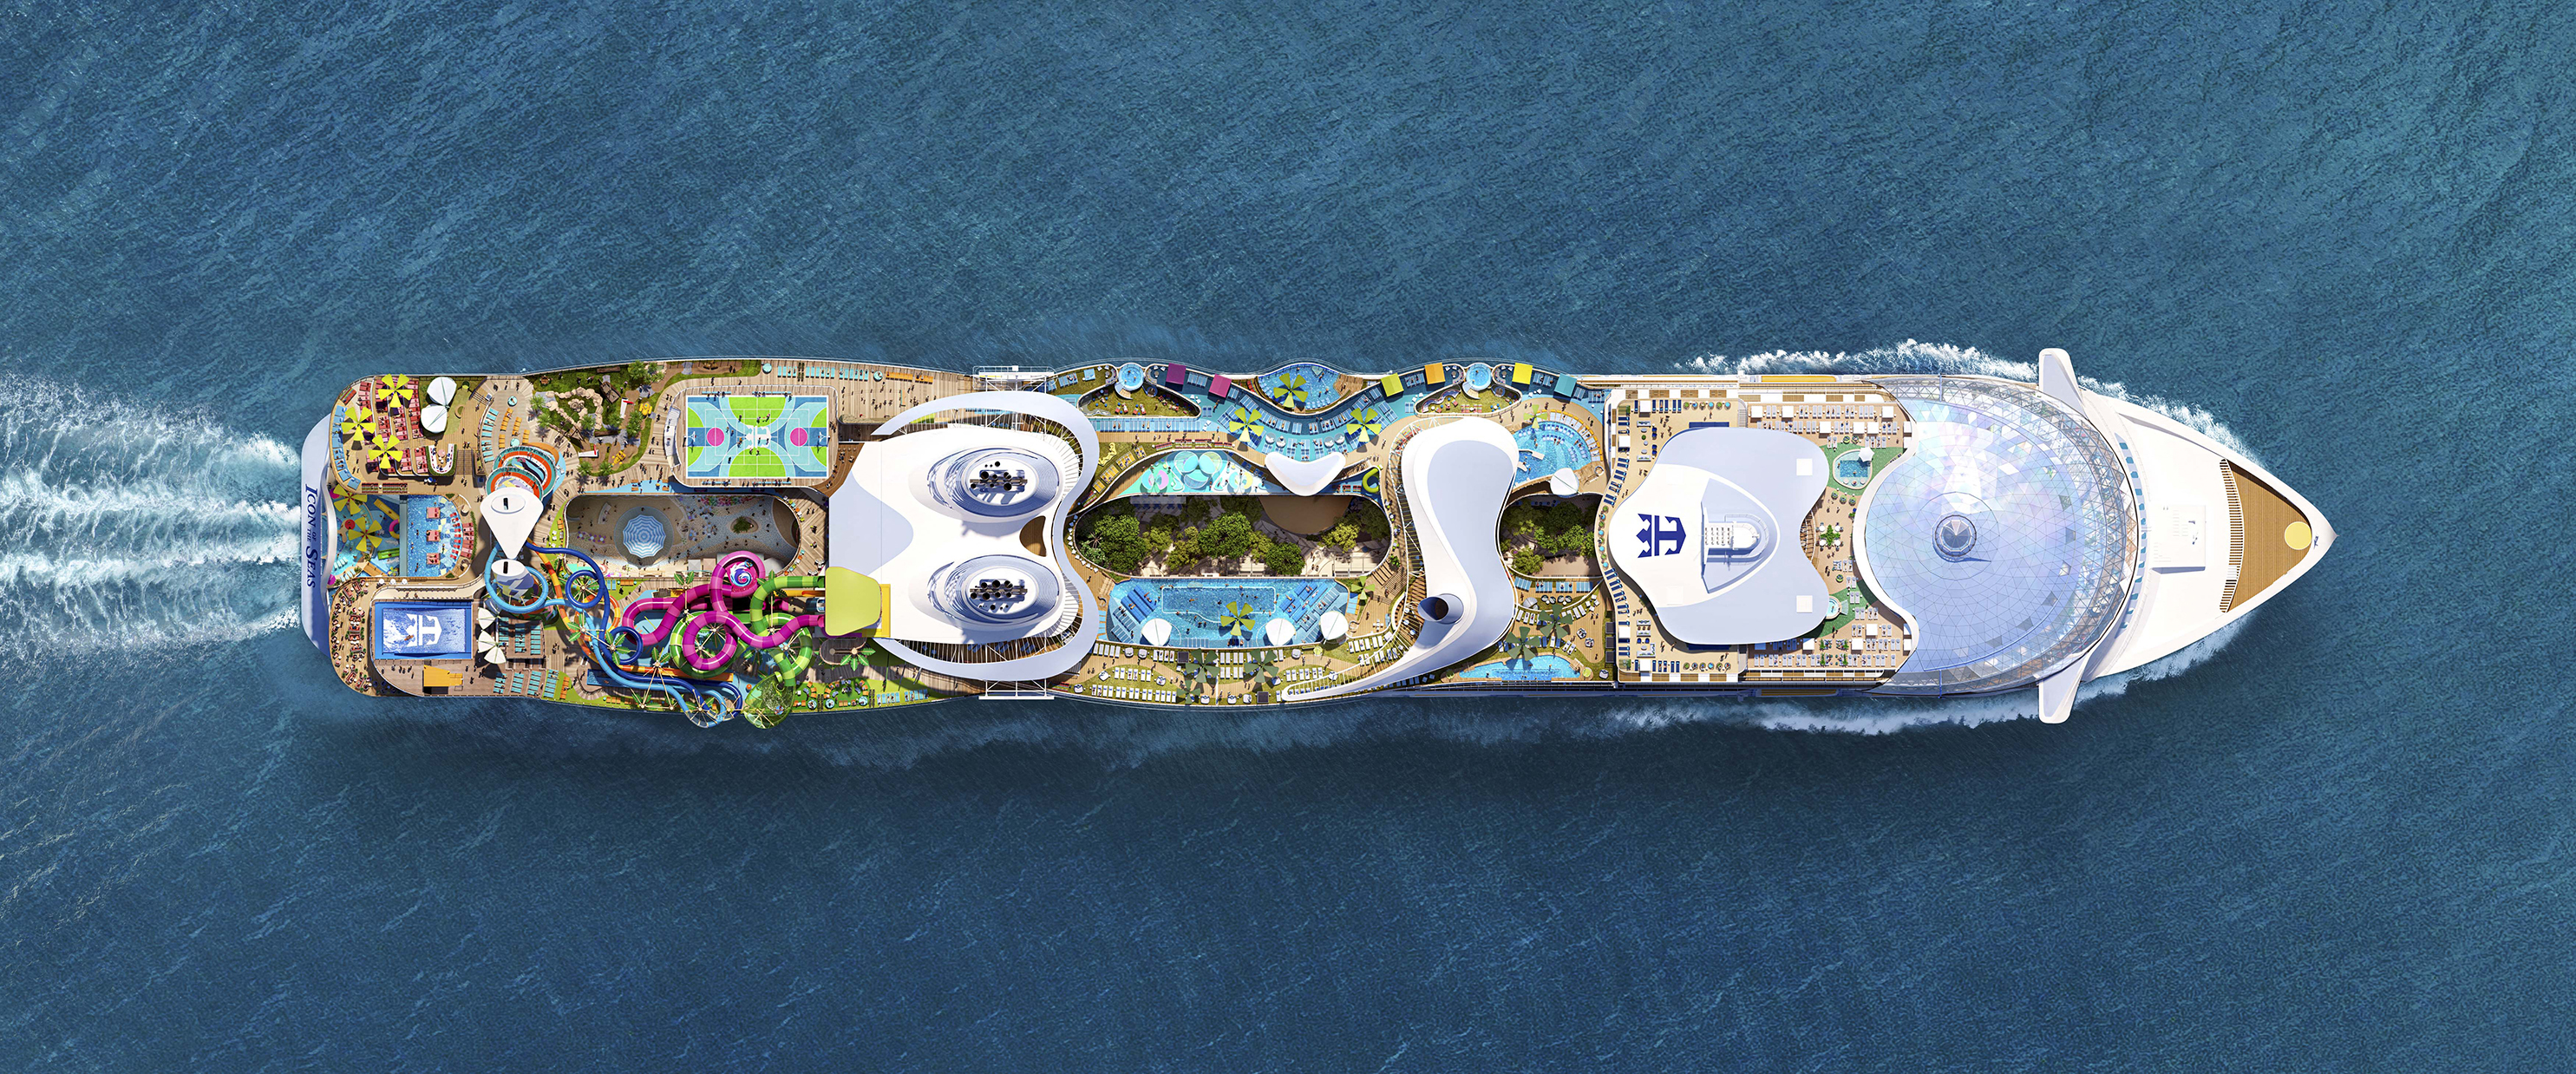 Die Icon of the Seas bietet Platz für 7.600 Personen, verfügt über acht verschiedene Zonen und mehr als 40 Restaurants und Bars